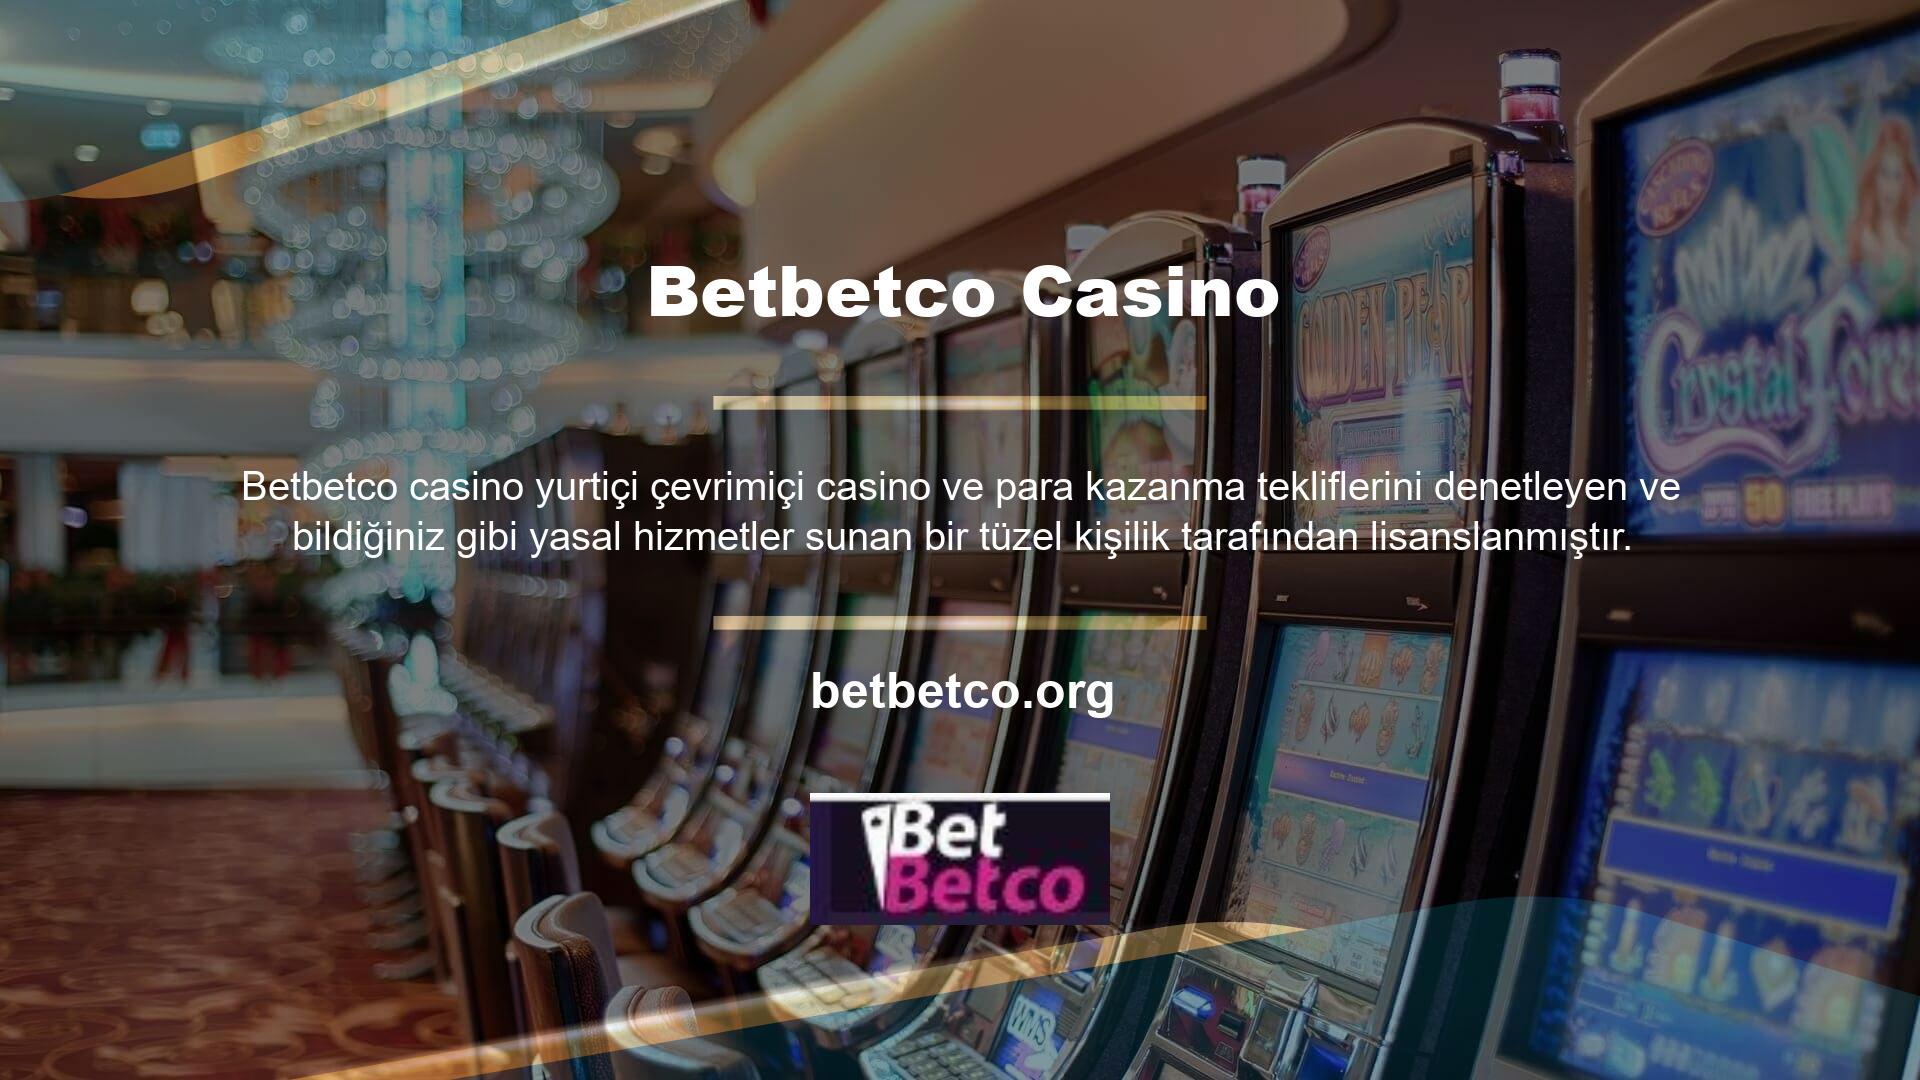 Betbetco, hızlı ve kolay para kazanma konusunda uzmanlaşmış eğlence mekanlarından biri olarak biliniyor